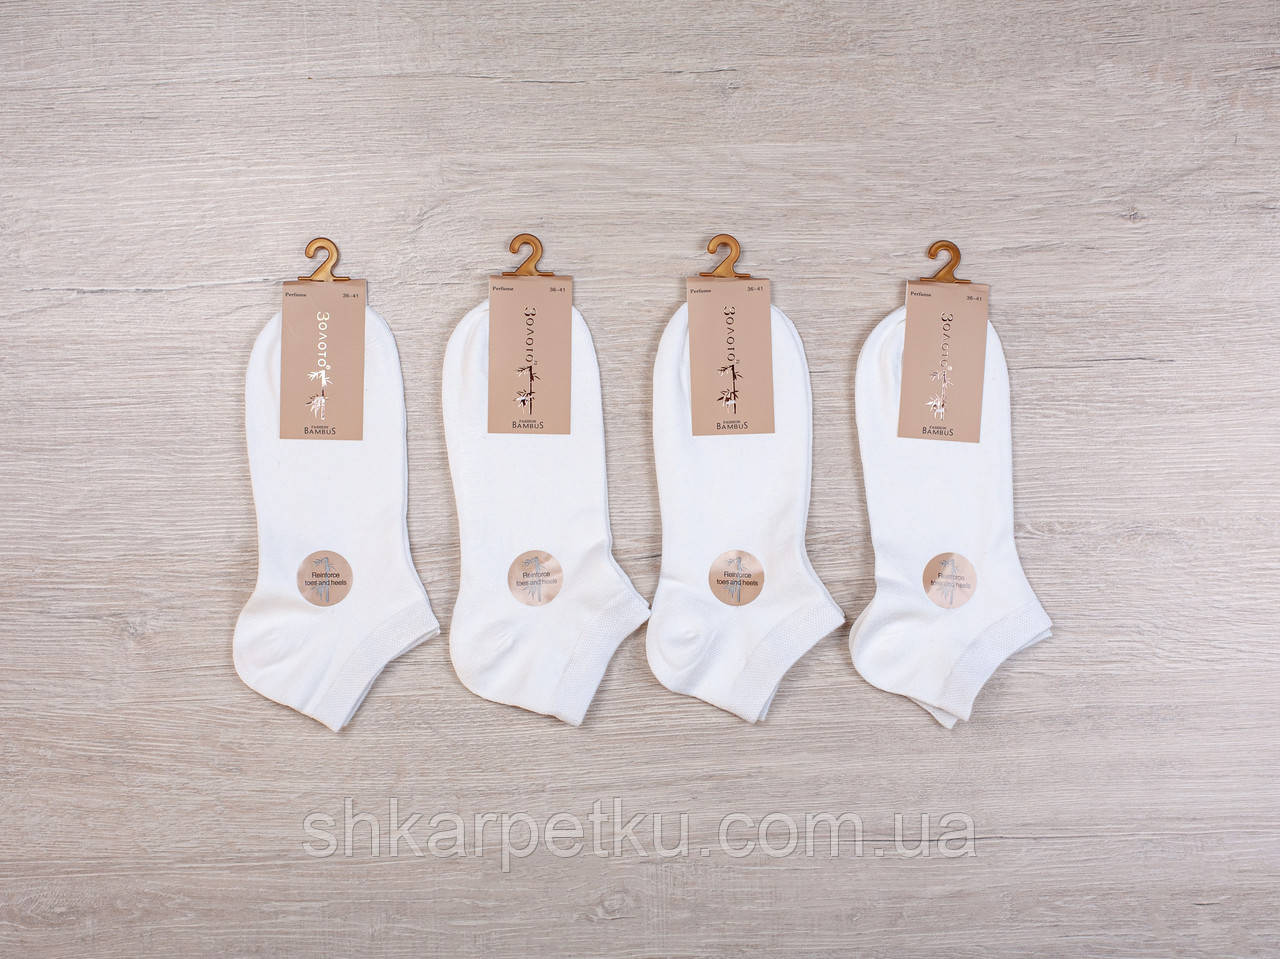 Жіночі короткі шкарпетки Золото, літні ароматизовані бамбукові. Розмір 36-41, 10 пар\уп. білі